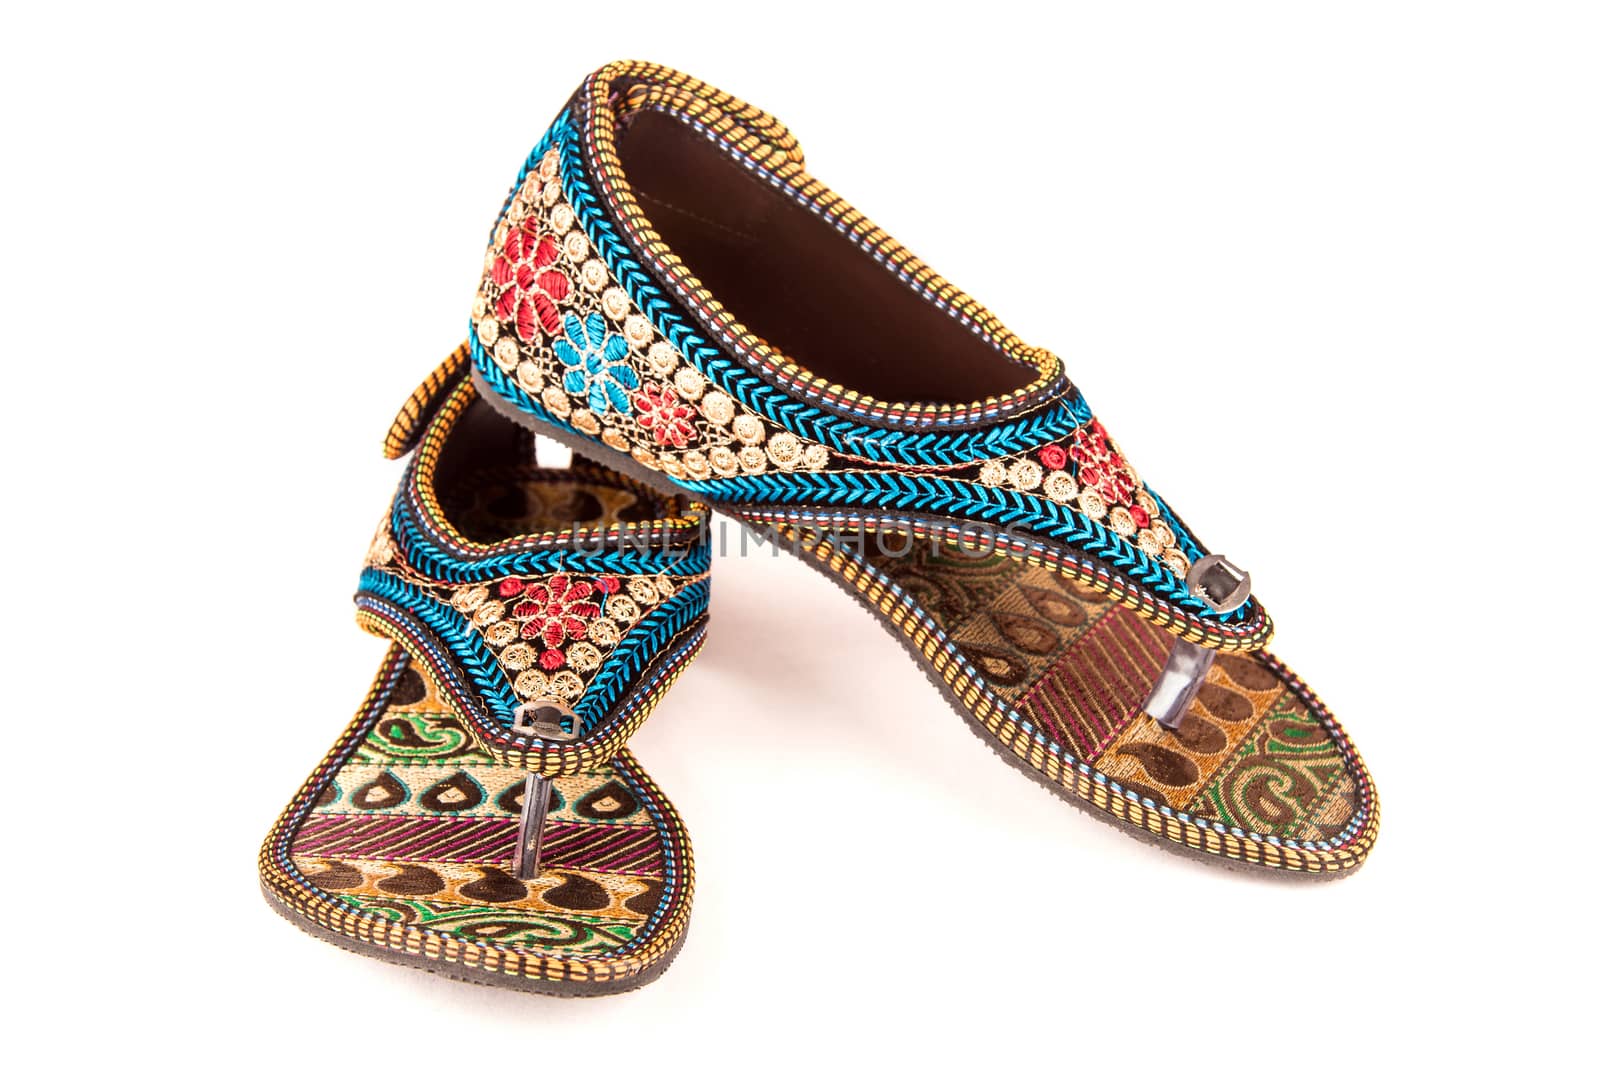 Ethnic ladies footwear by neelsky